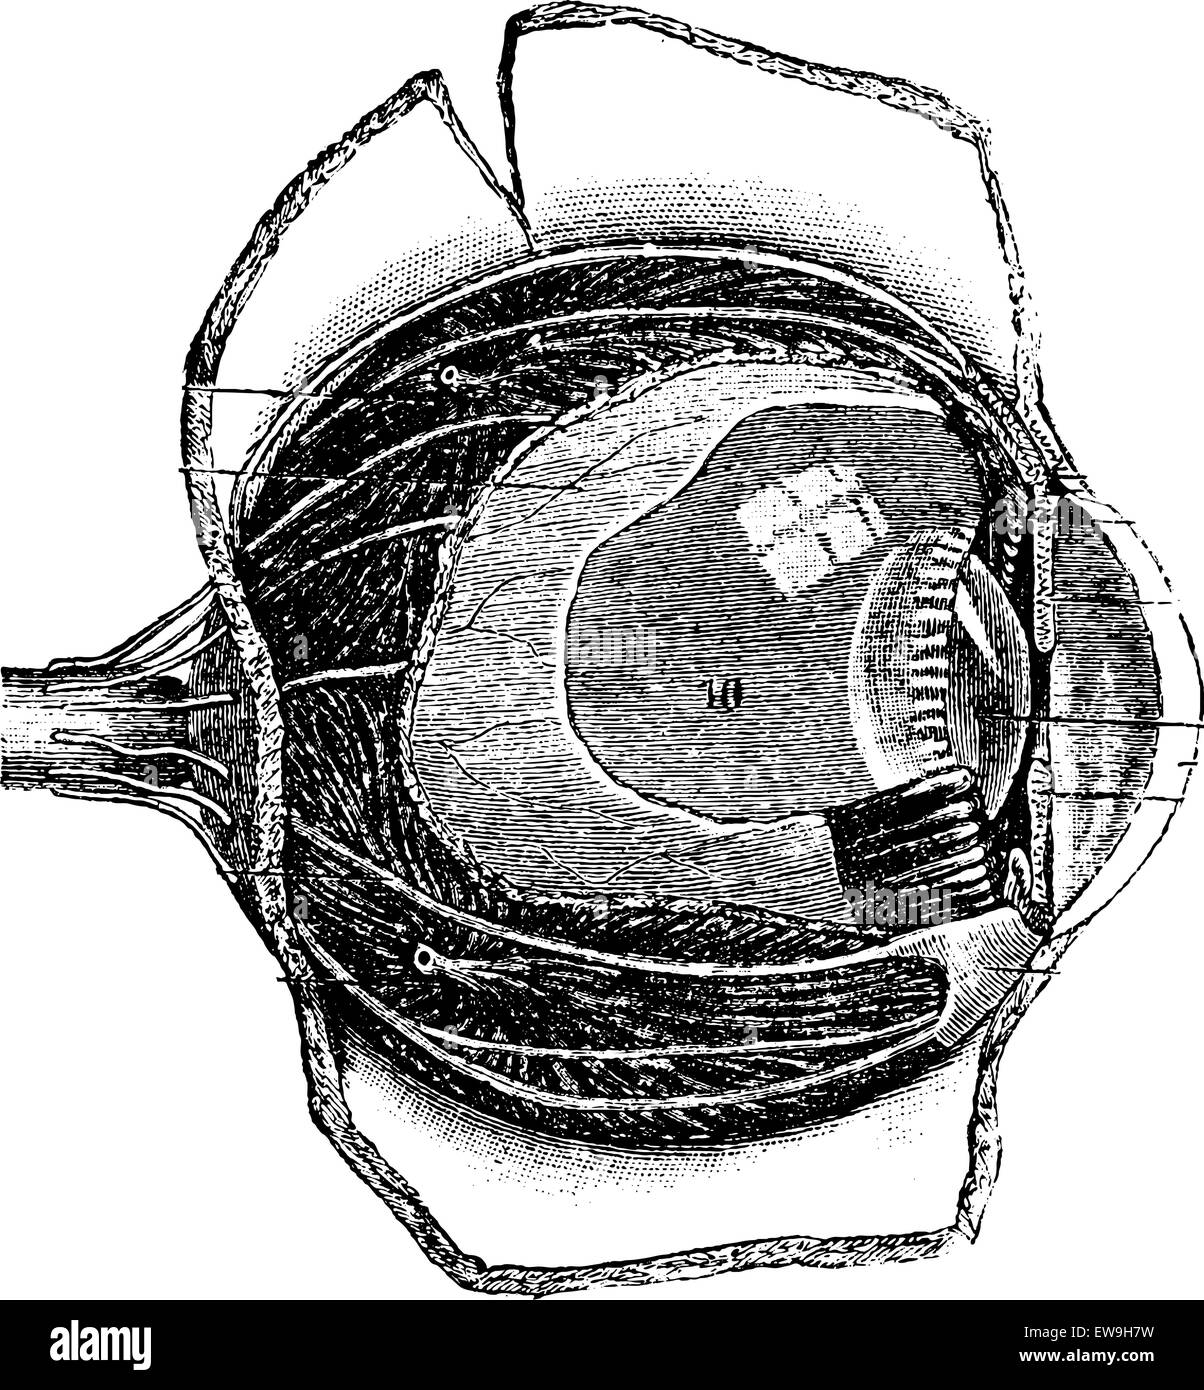 Section de la anteroposterior Œil humain, vintage engraved illustration. Dictionnaire de médecine habituelle par le Dr Labarthe - 1885 Illustration de Vecteur